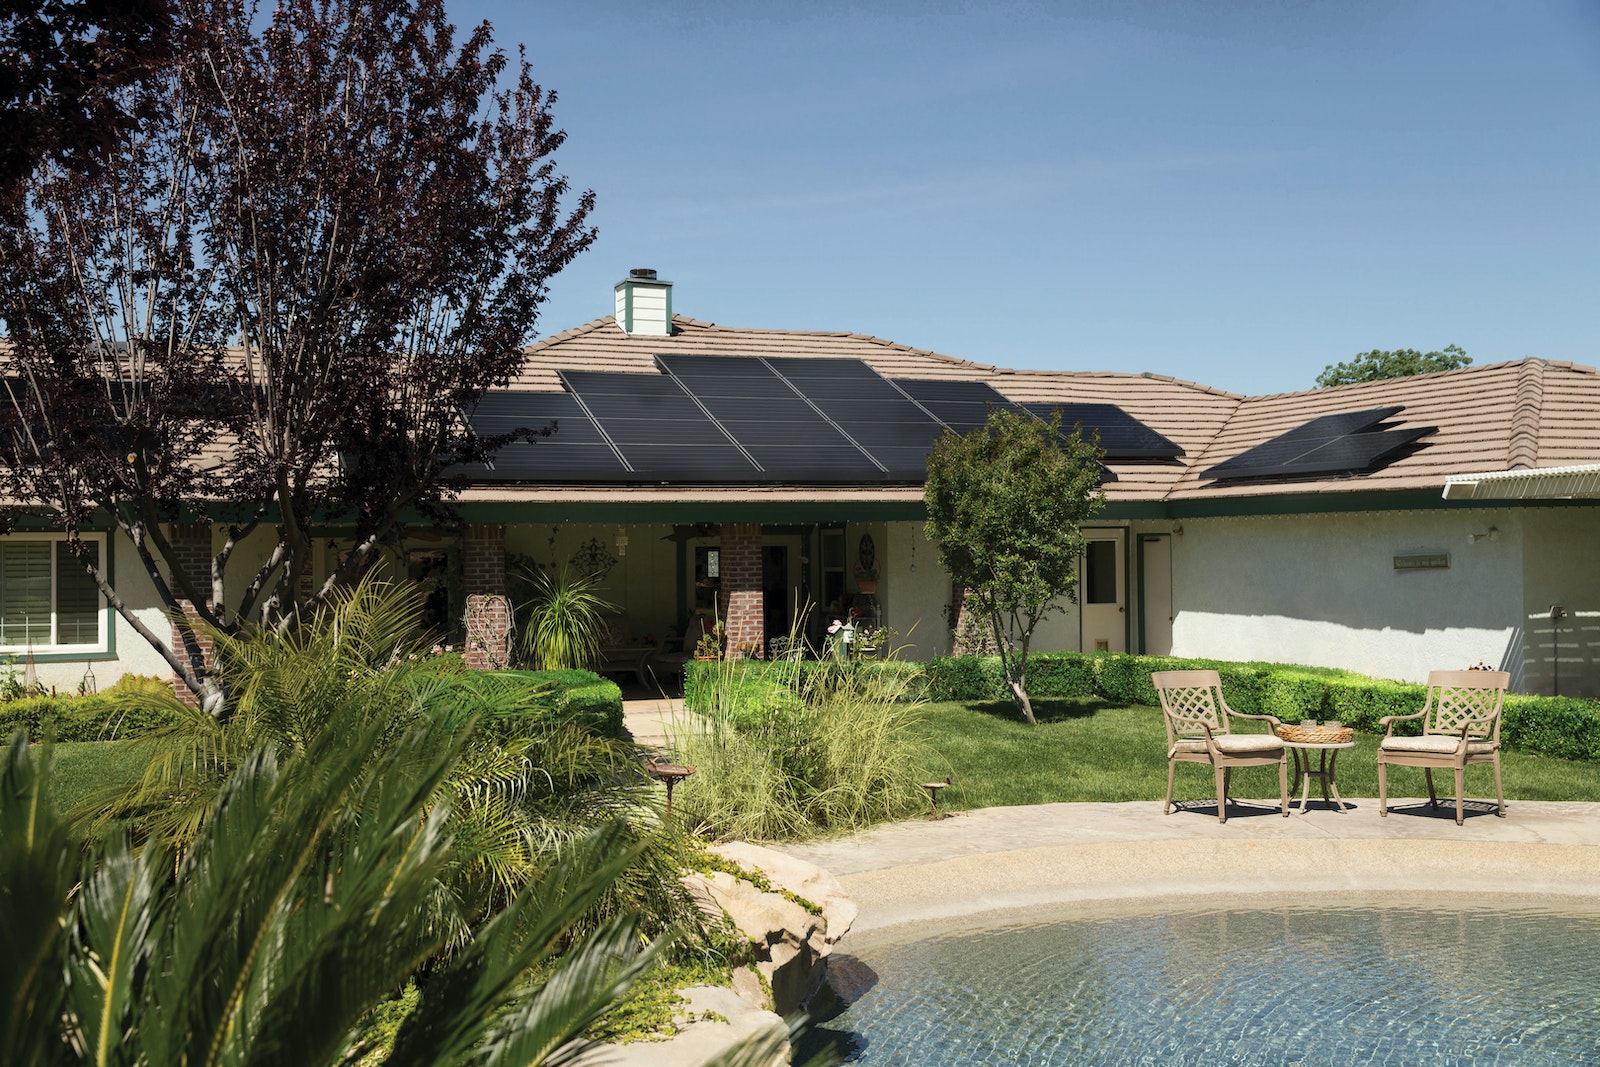 Les panneaux solaires photovoltaiques sont en général placés sur le toit d'une maison